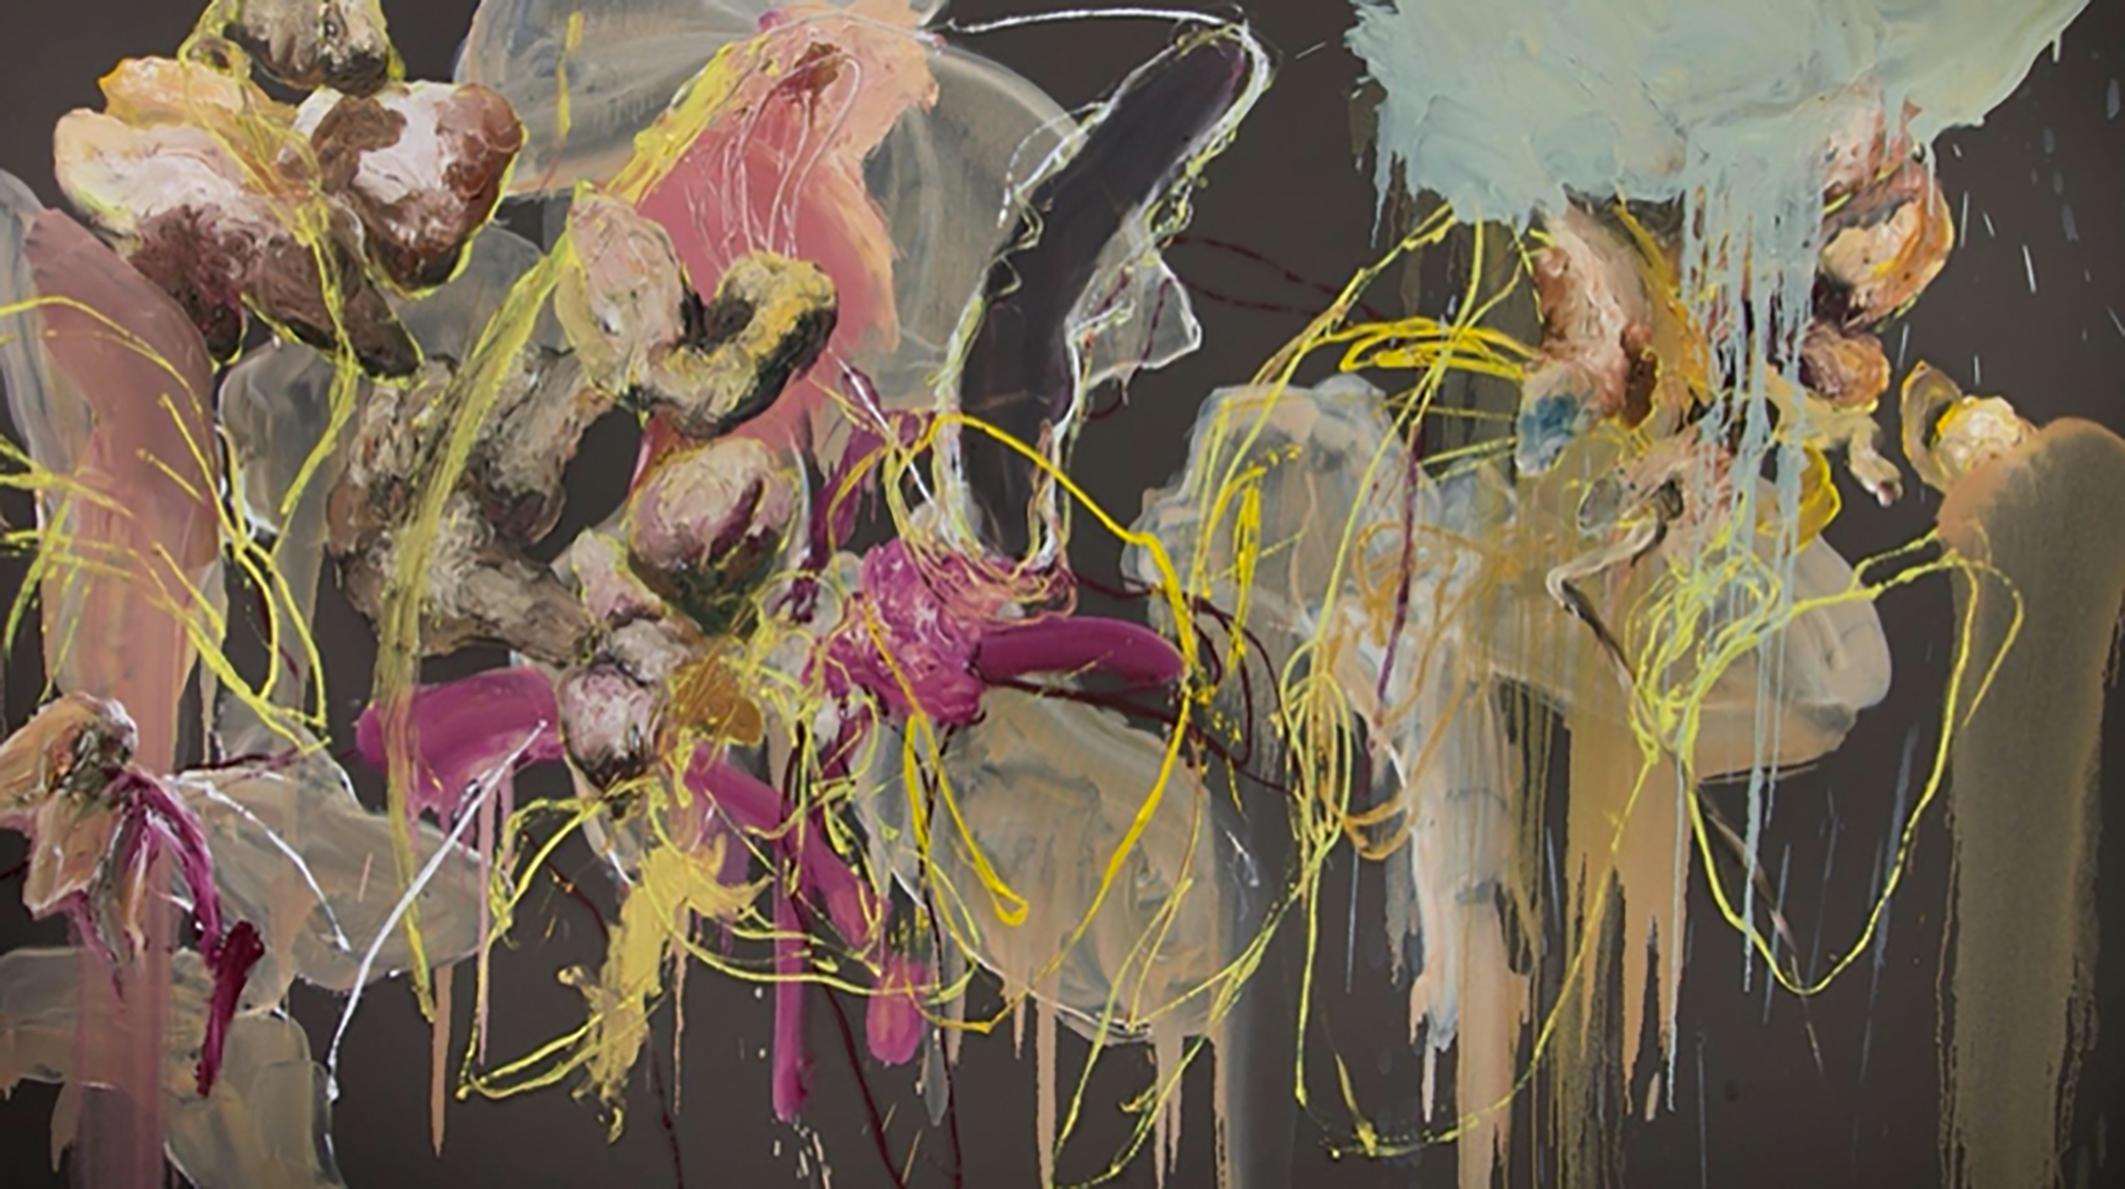 Angel Ricardo Rios Abstract Painting - Baños mixtos y señoritas de falda larga